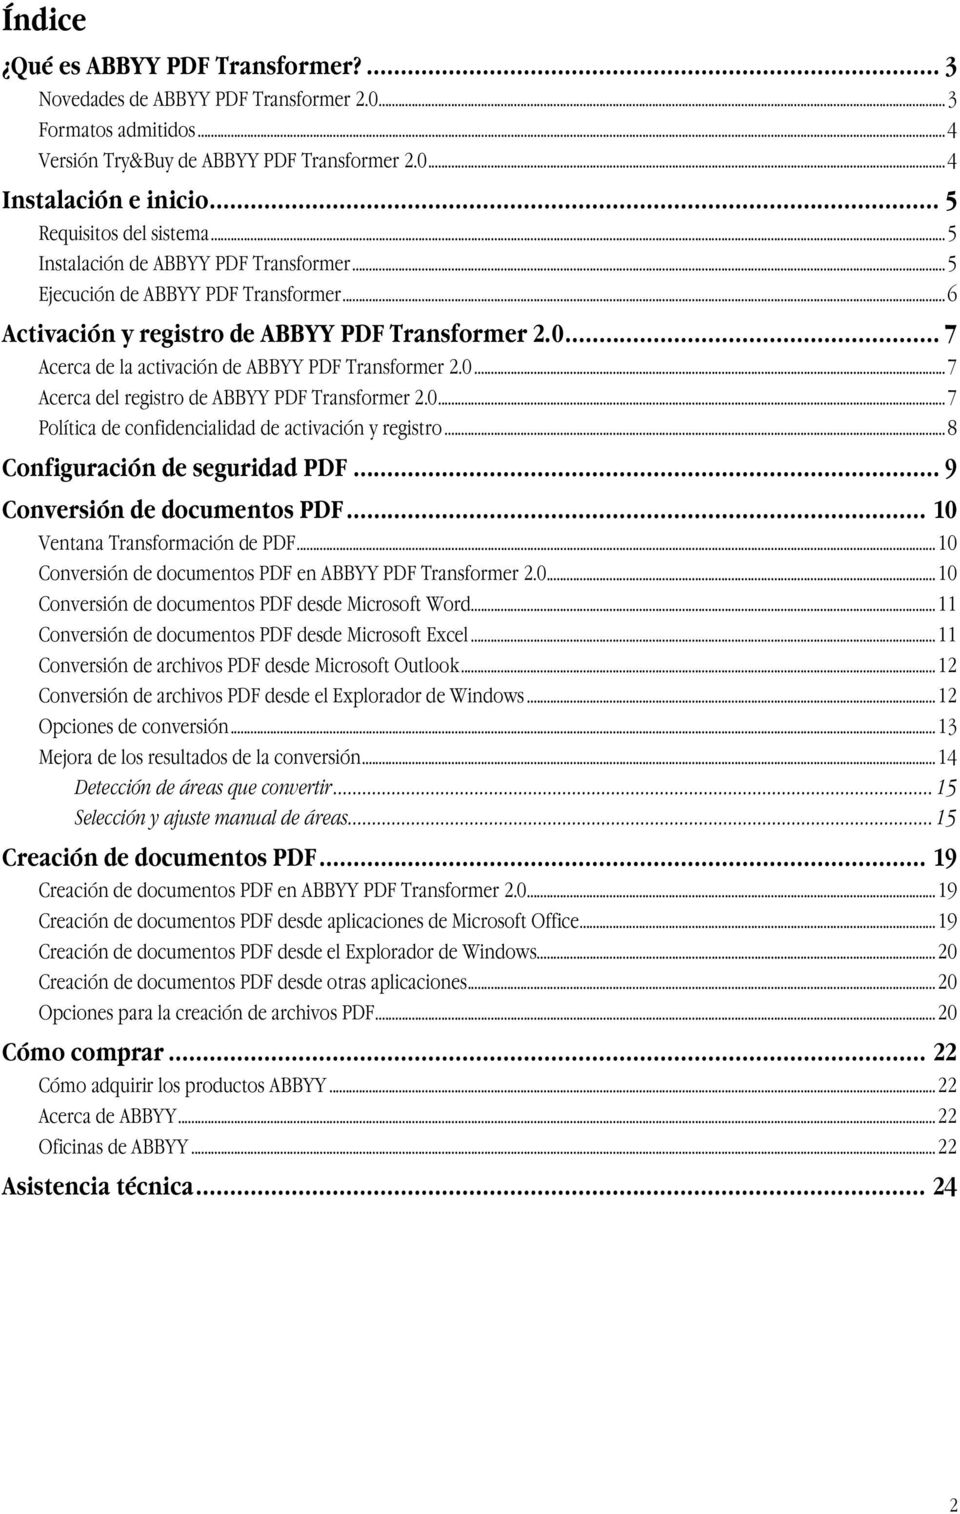 .. 7 Acerca de la activación de ABBYY PDF Transformer 2.0...7 Acerca del registro de ABBYY PDF Transformer 2.0...7 Política de confidencialidad de activación y registro.